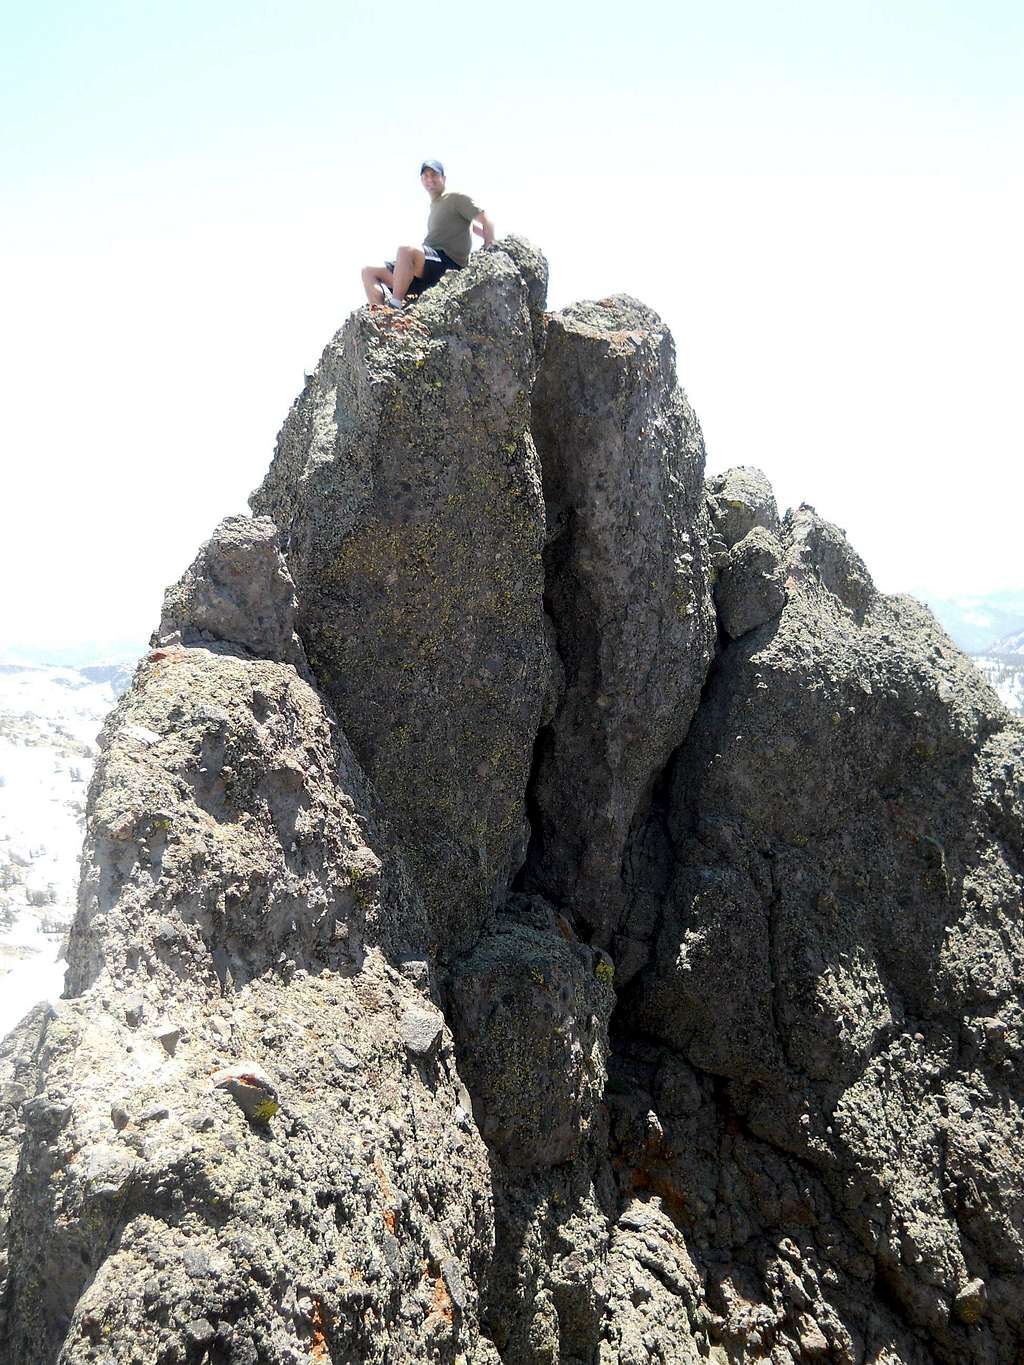 On top of Thimble Peak